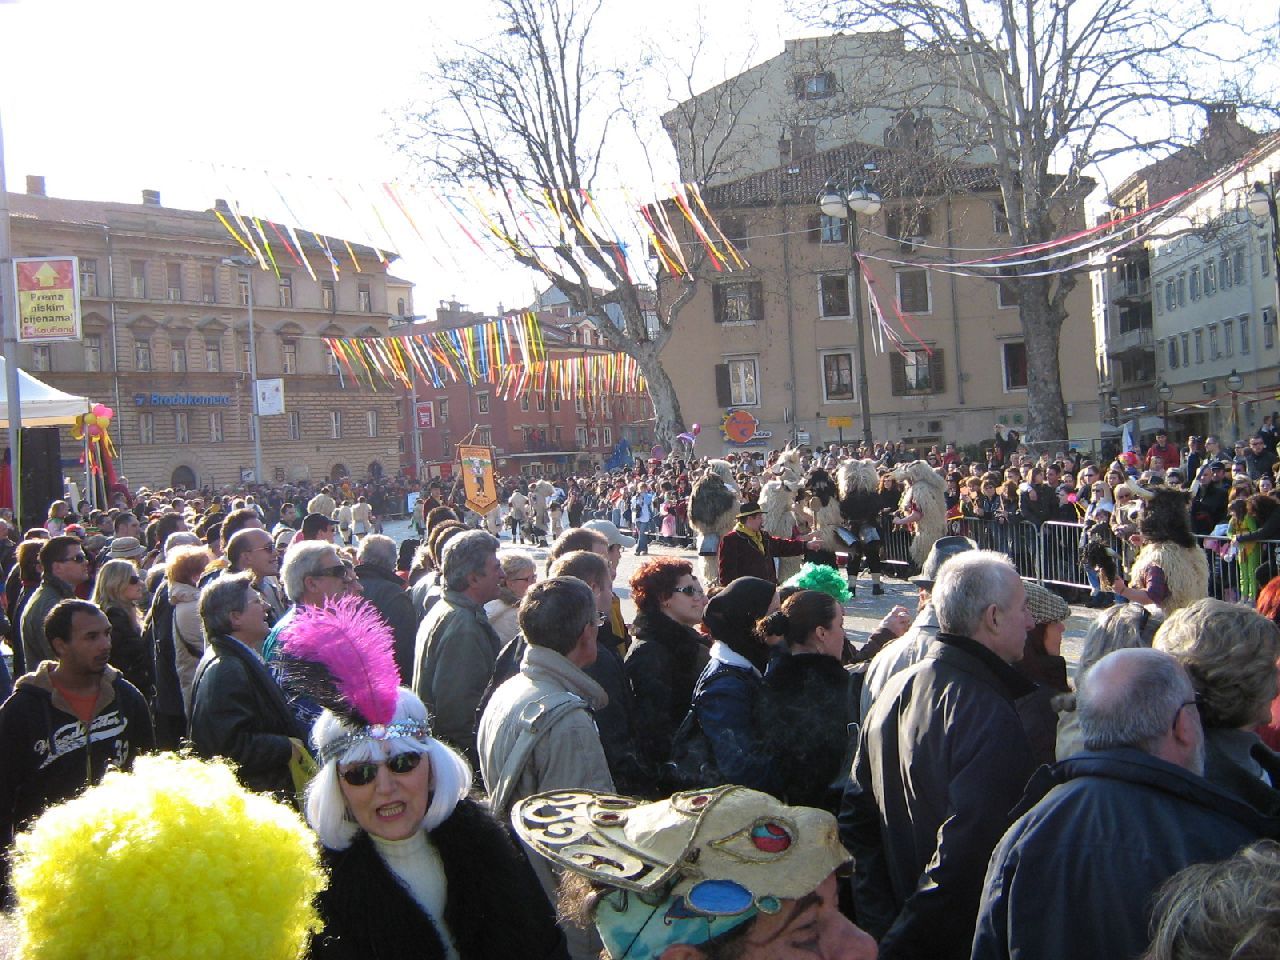 Rijeka Carnival Crowds.jpg